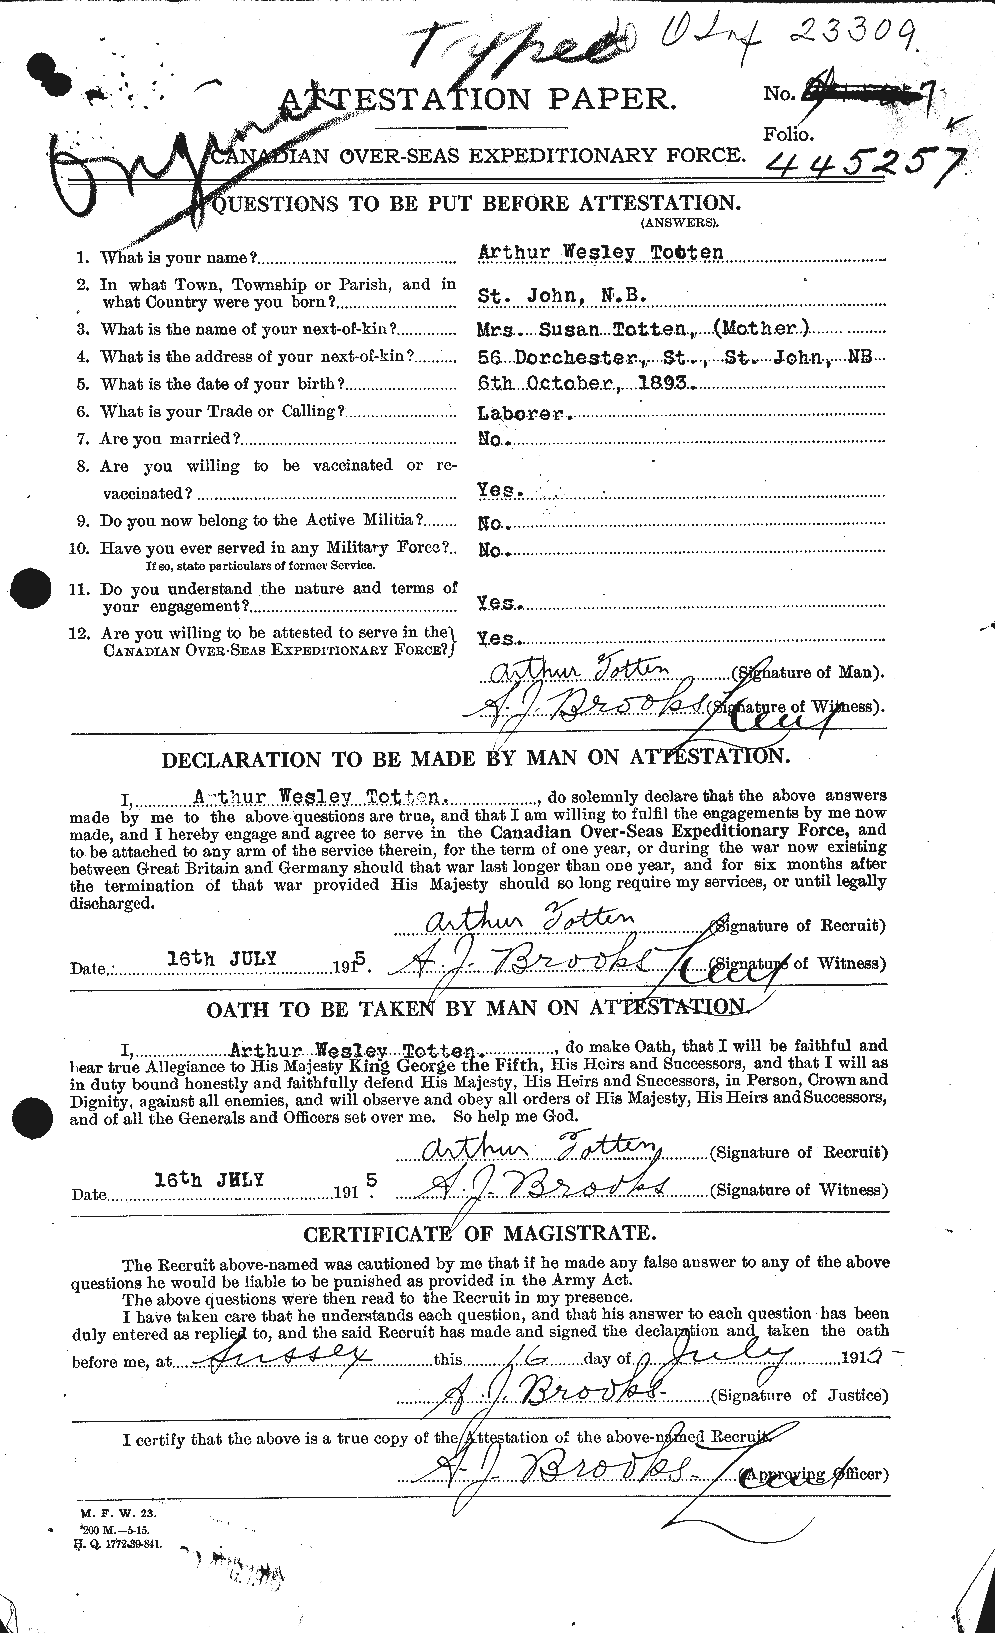 Dossiers du Personnel de la Première Guerre mondiale - CEC 650062a